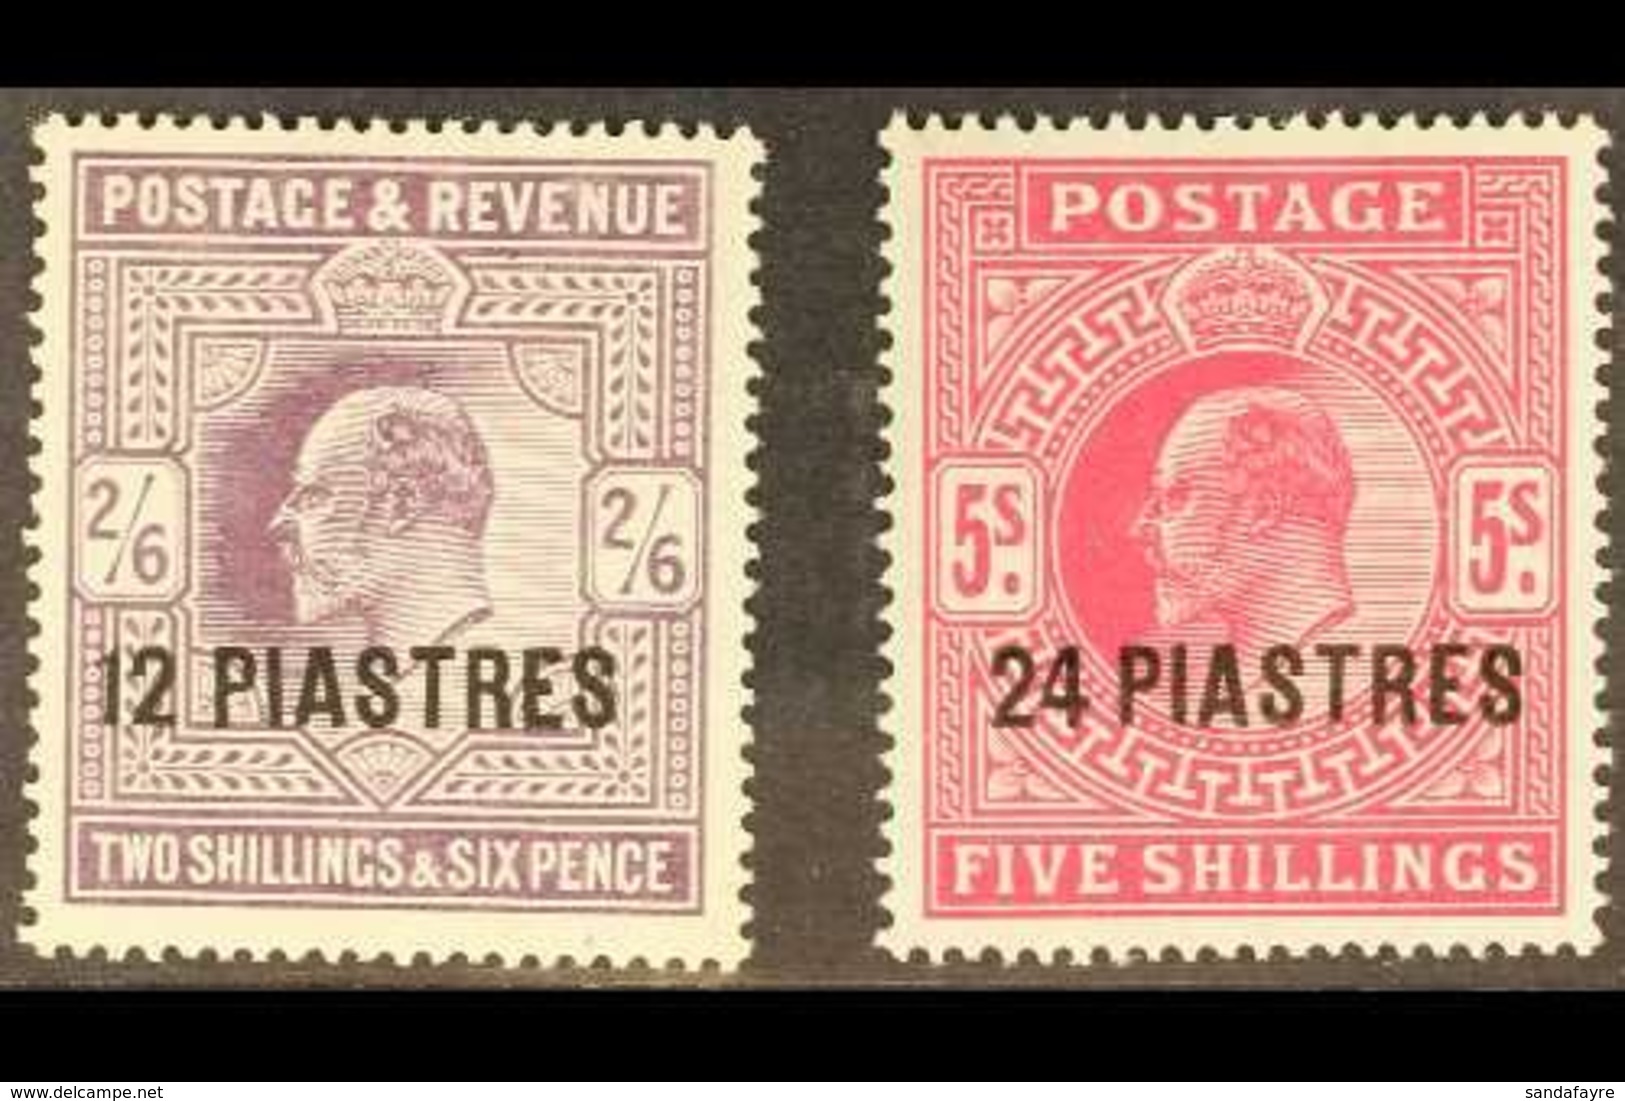 1911 - 13 12pi On 2s 6d And 24pi On 5s Carmine, SG 33/4, Very Fine And Fresh Mint. (2 Stamps) For More Images, Please Vi - Levant Britannique